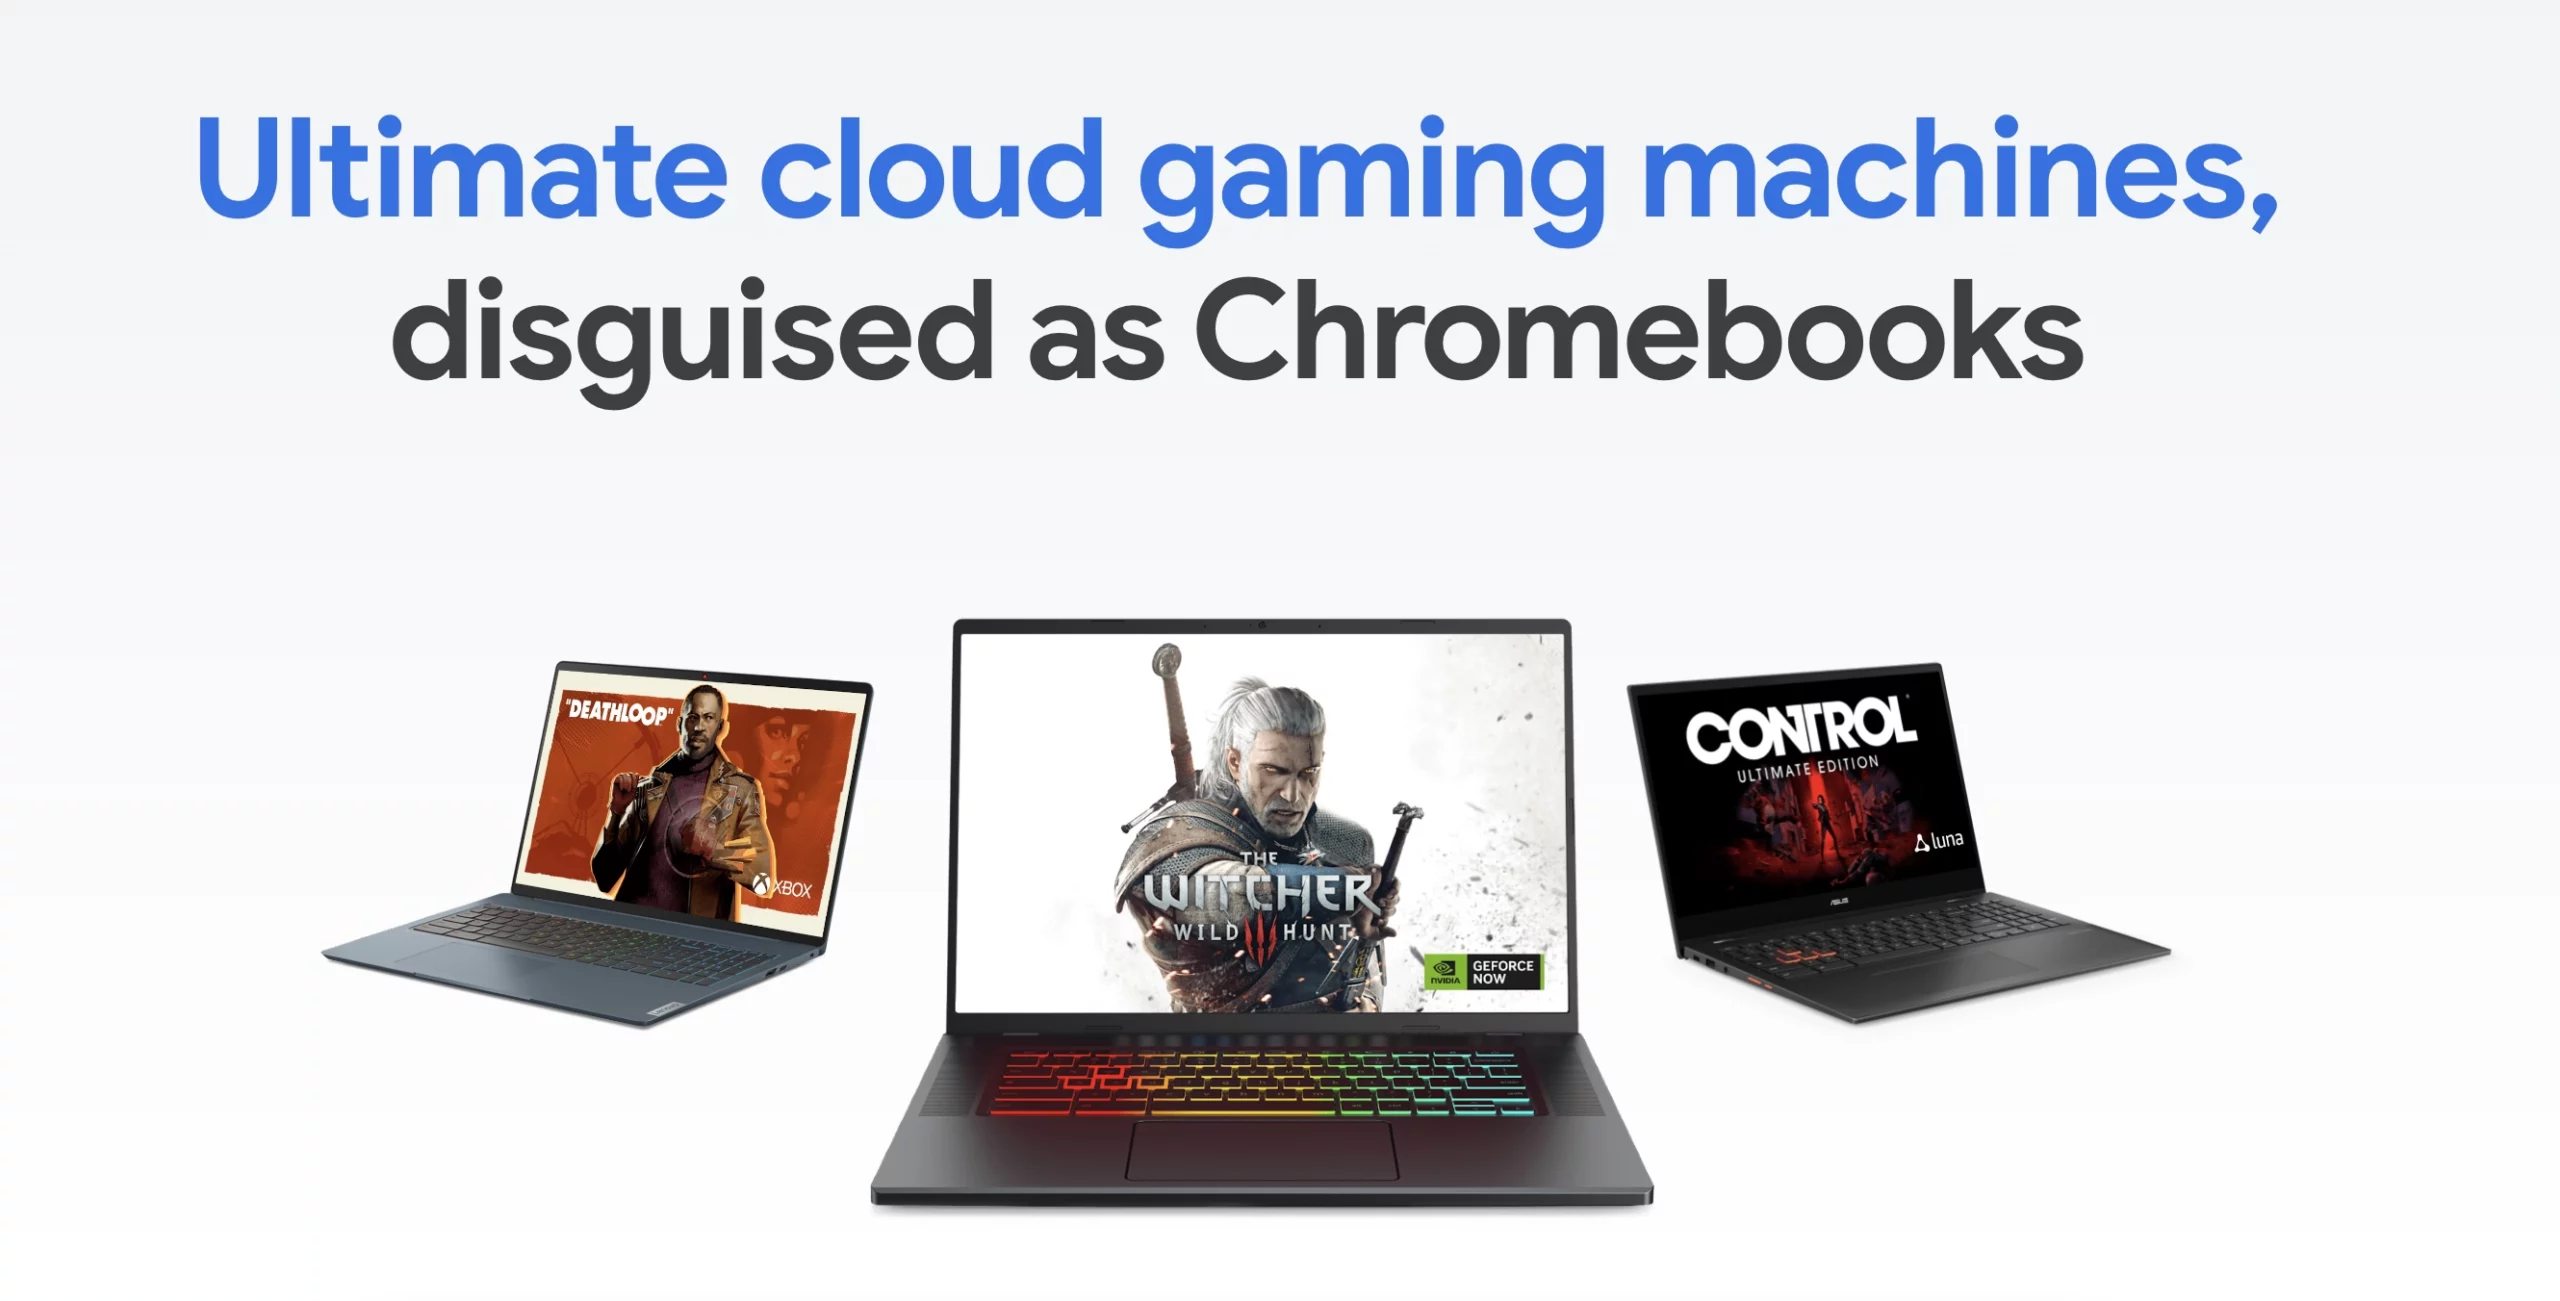 Premiers Chromebooks gaming scaled jpg